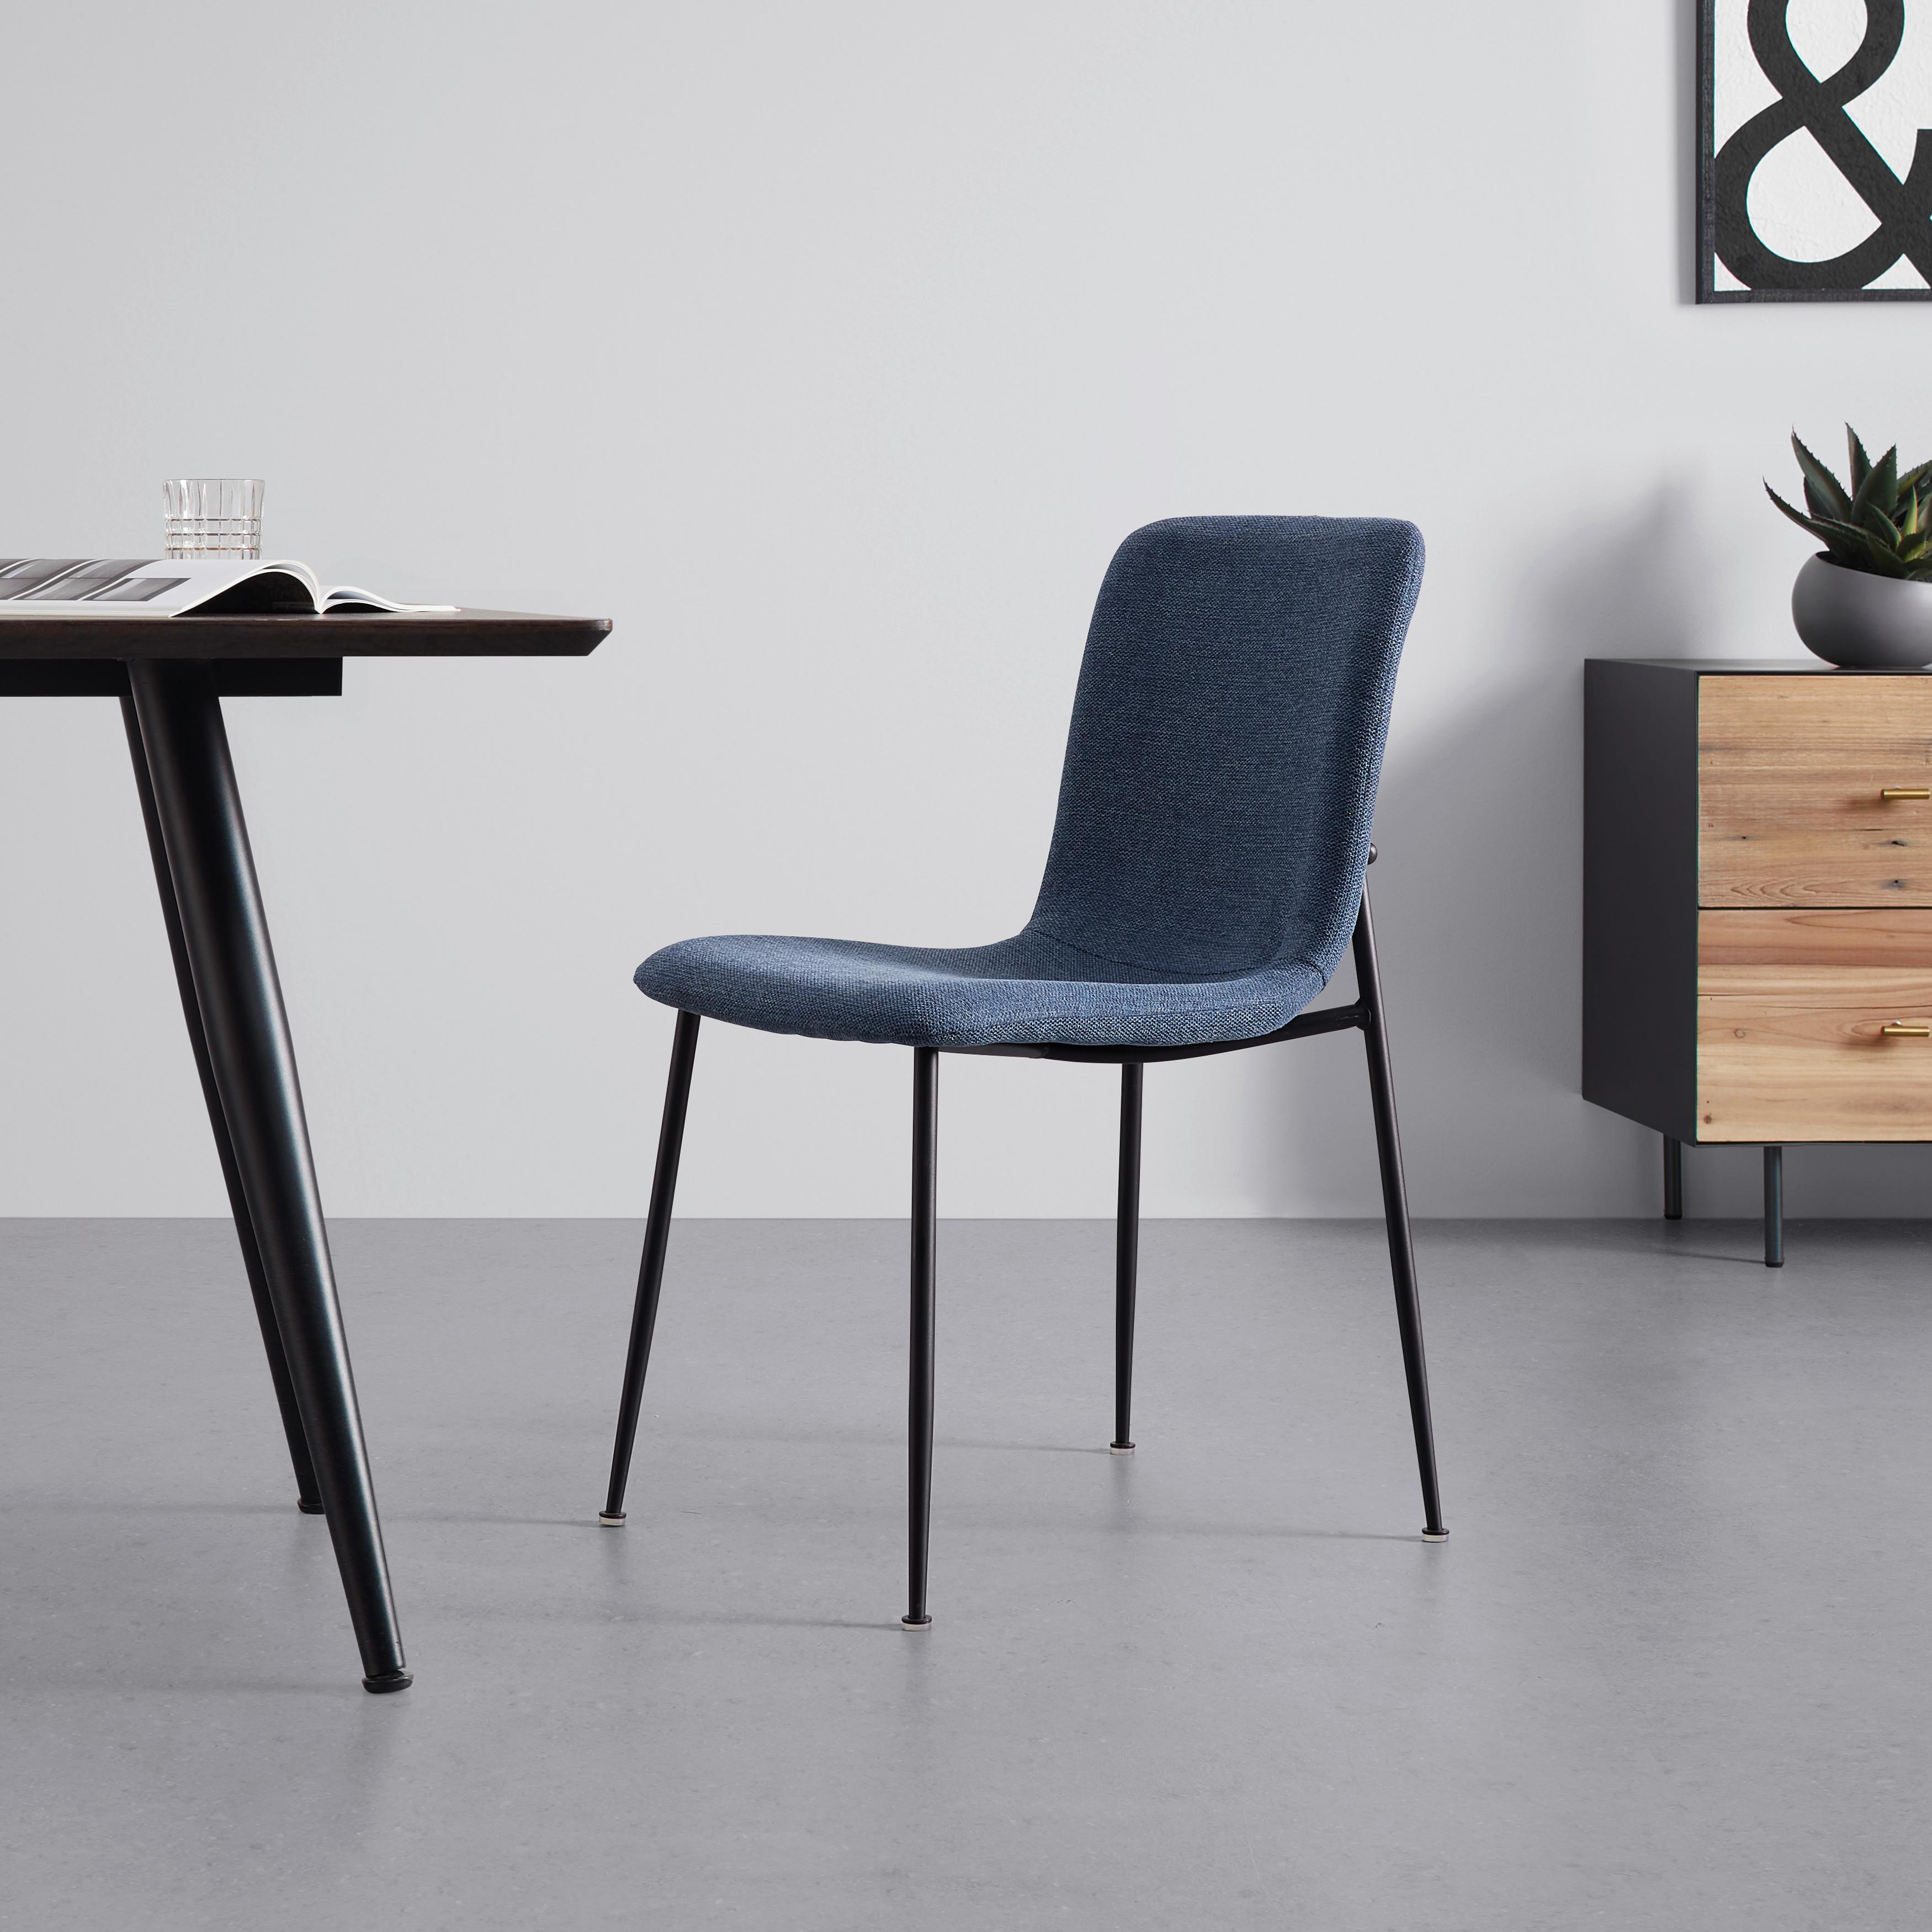 Jídelní Židle Nele Modrá - modrá/černá, Moderní, kov/dřevo (43/83/56cm) - P & B